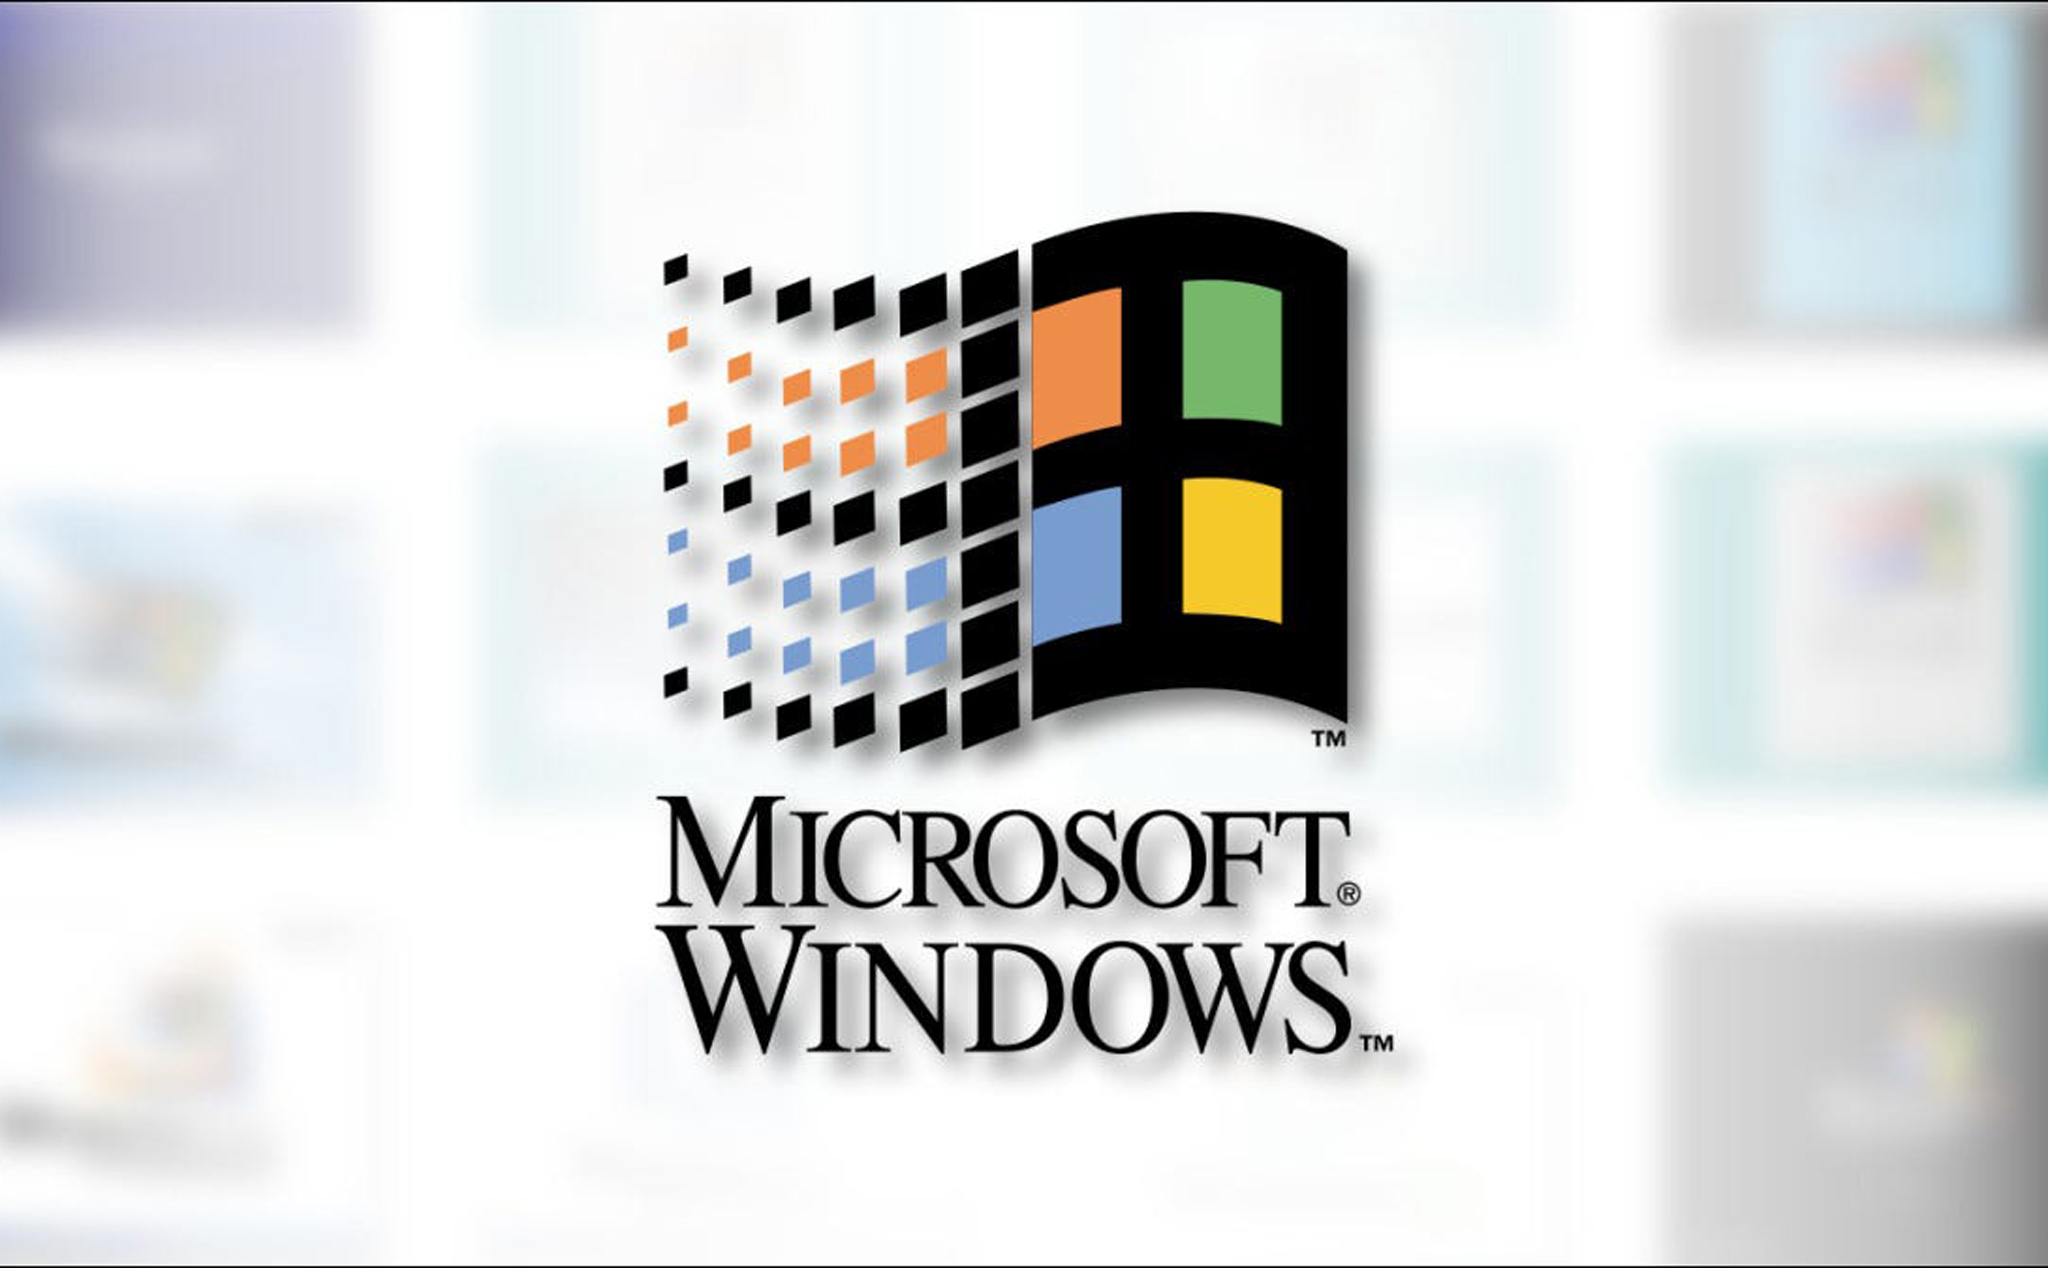 Tại sao Windows lại được gọi là “Windows”?